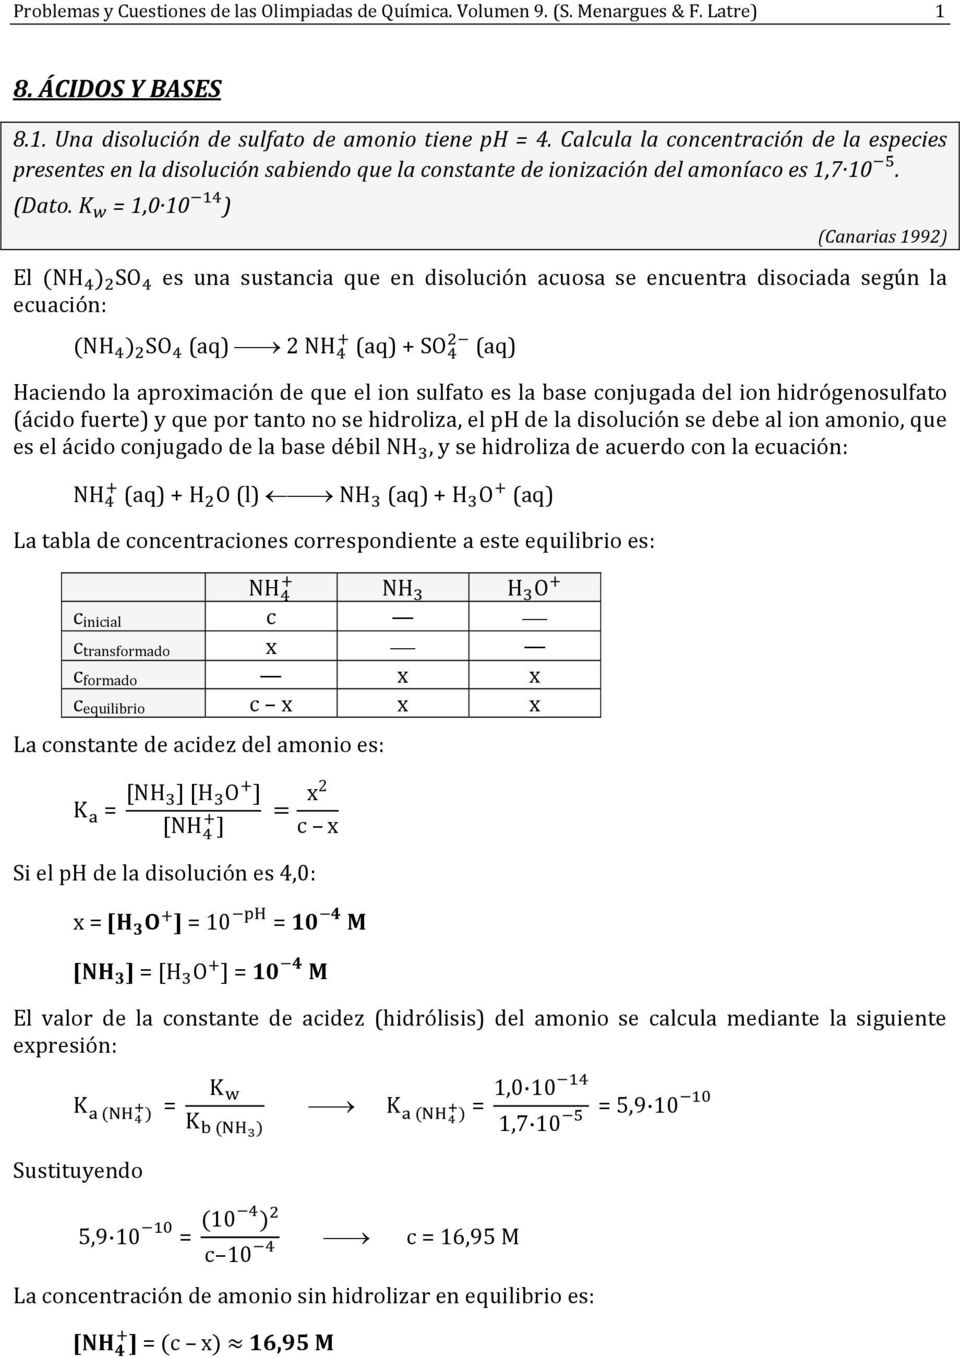 = 1,0 10 ) (Canarias 1992) El NH SO es una sustancia que en dislución acusa se encuentra disciada según la ecuación: NH SO (aq) 2 NH (aq) + SO (aq) Haciend la aprximación de que el in sulfat es la